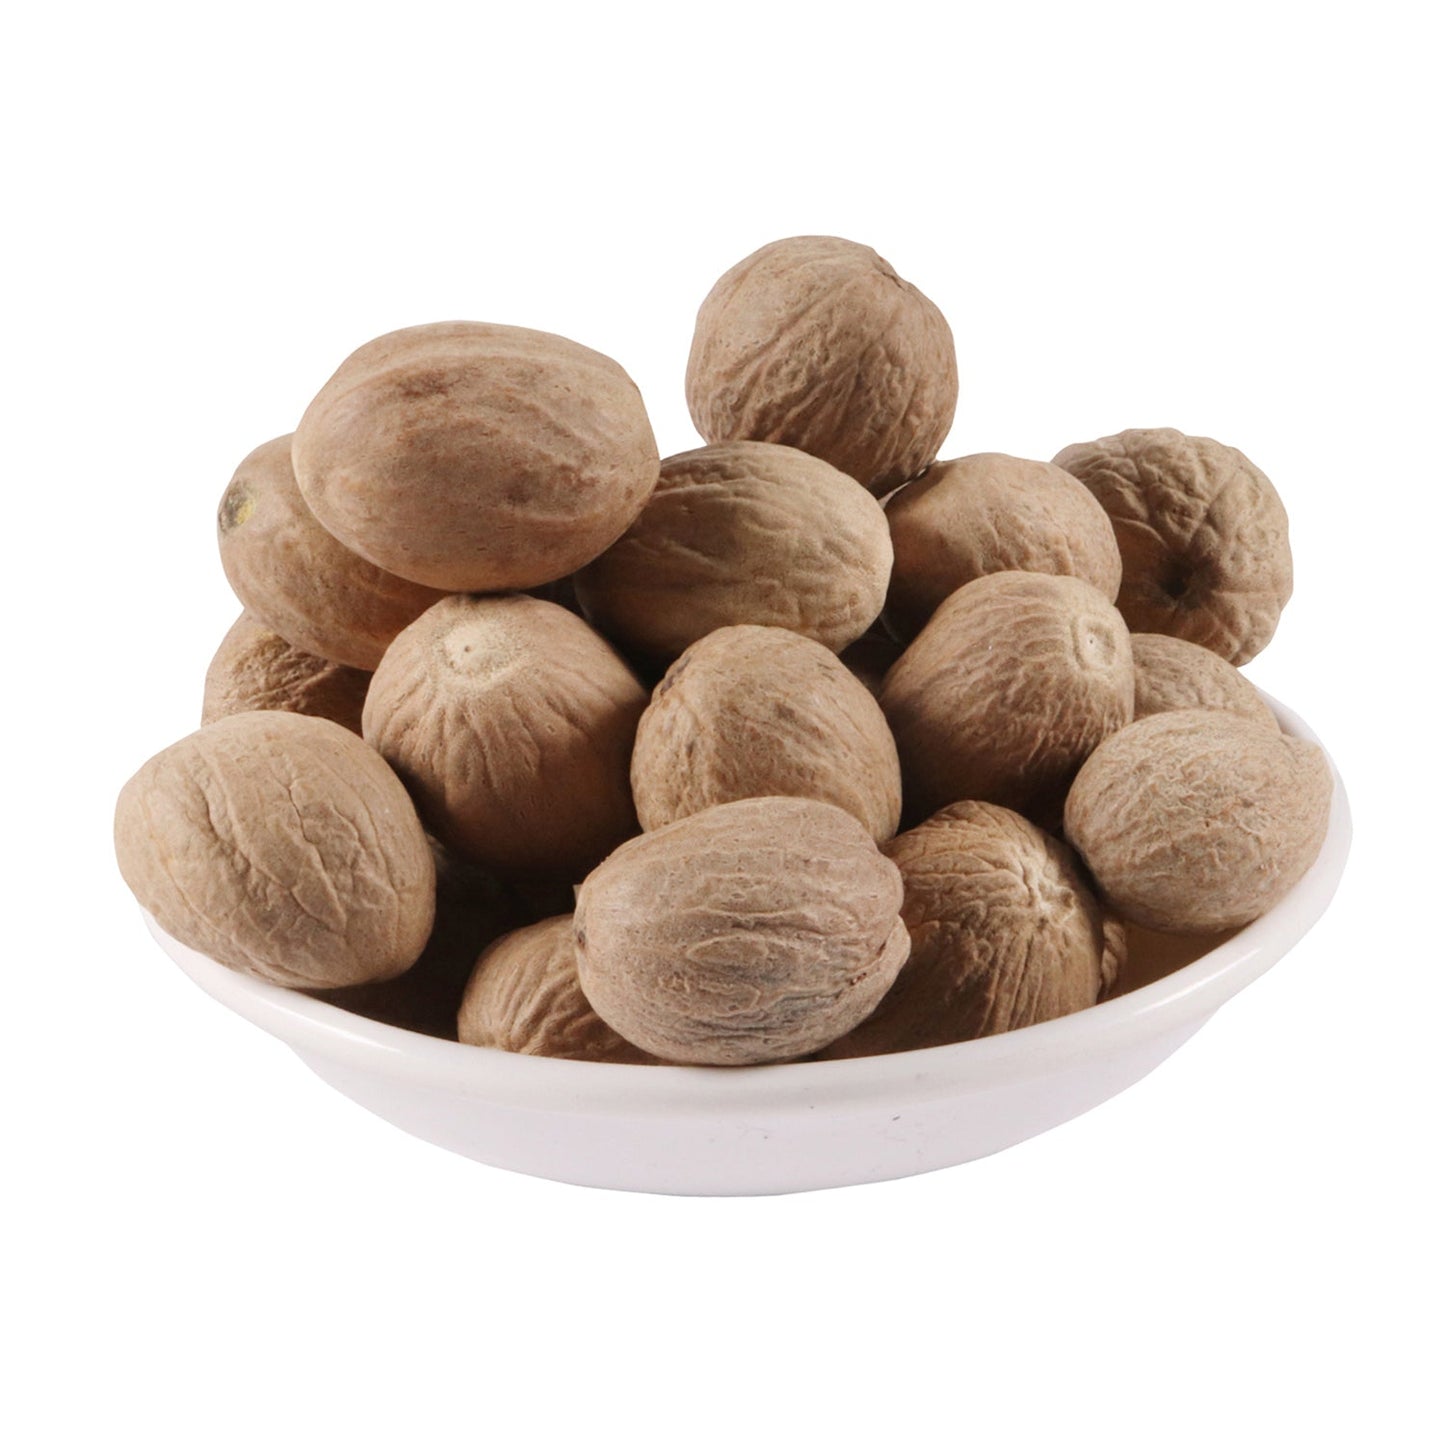 Jaiphal Asli - Jathikai - Myristica fragrans - Nutmeg (200 Grams)